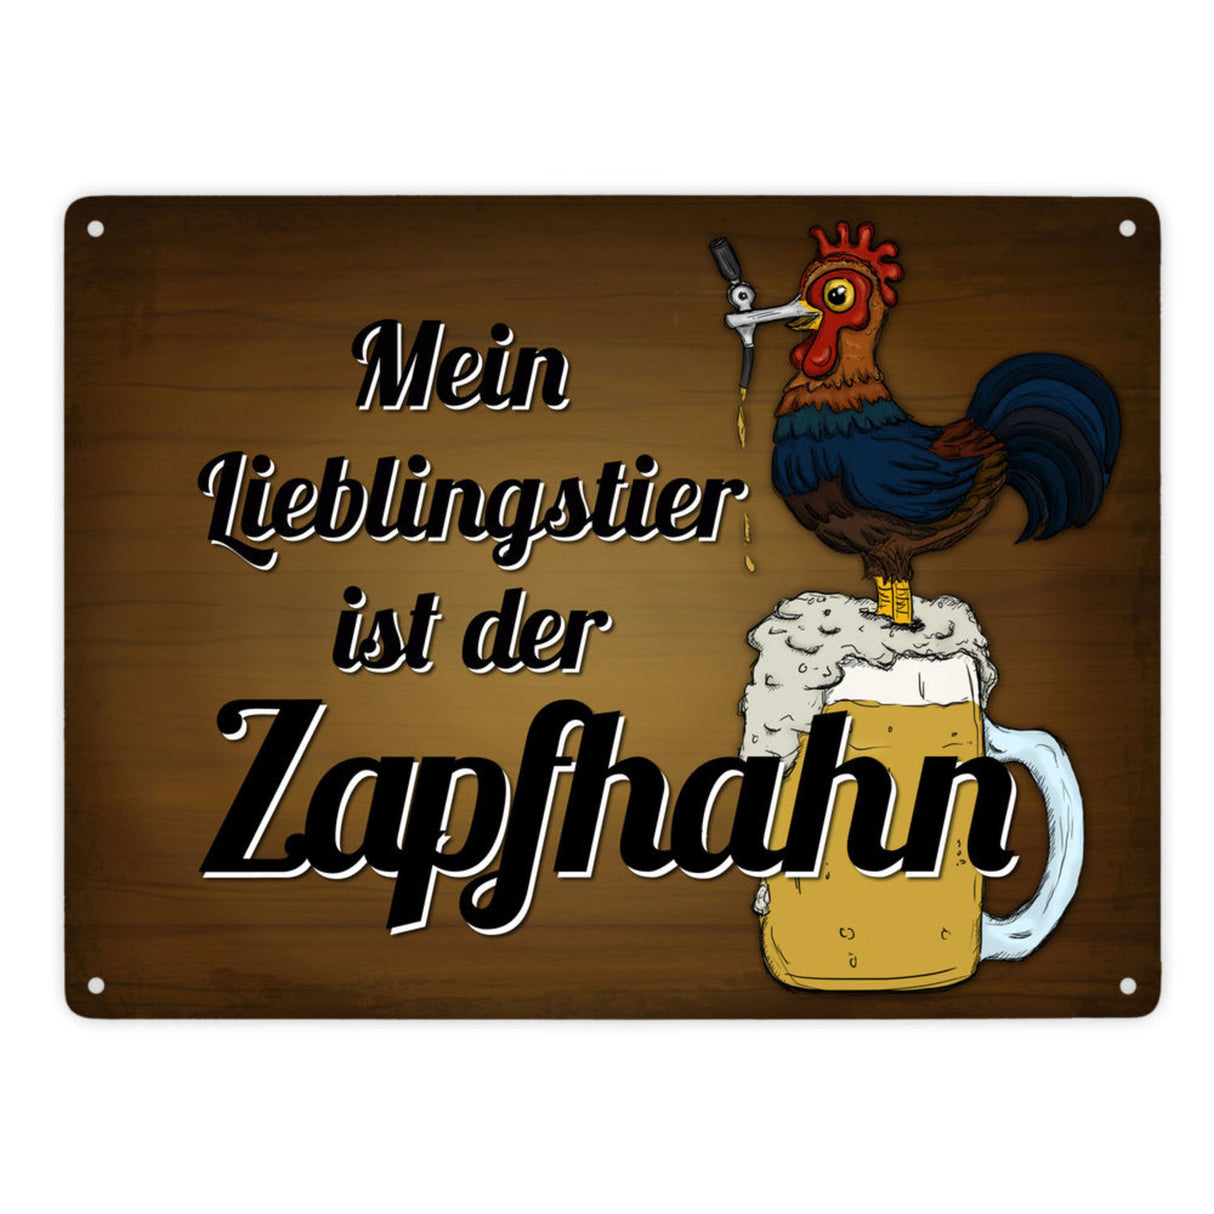 Mein Lieblingstier ist der Zapfhahn Metallschild mit Bier Motiv Bar Kneipe Hahn